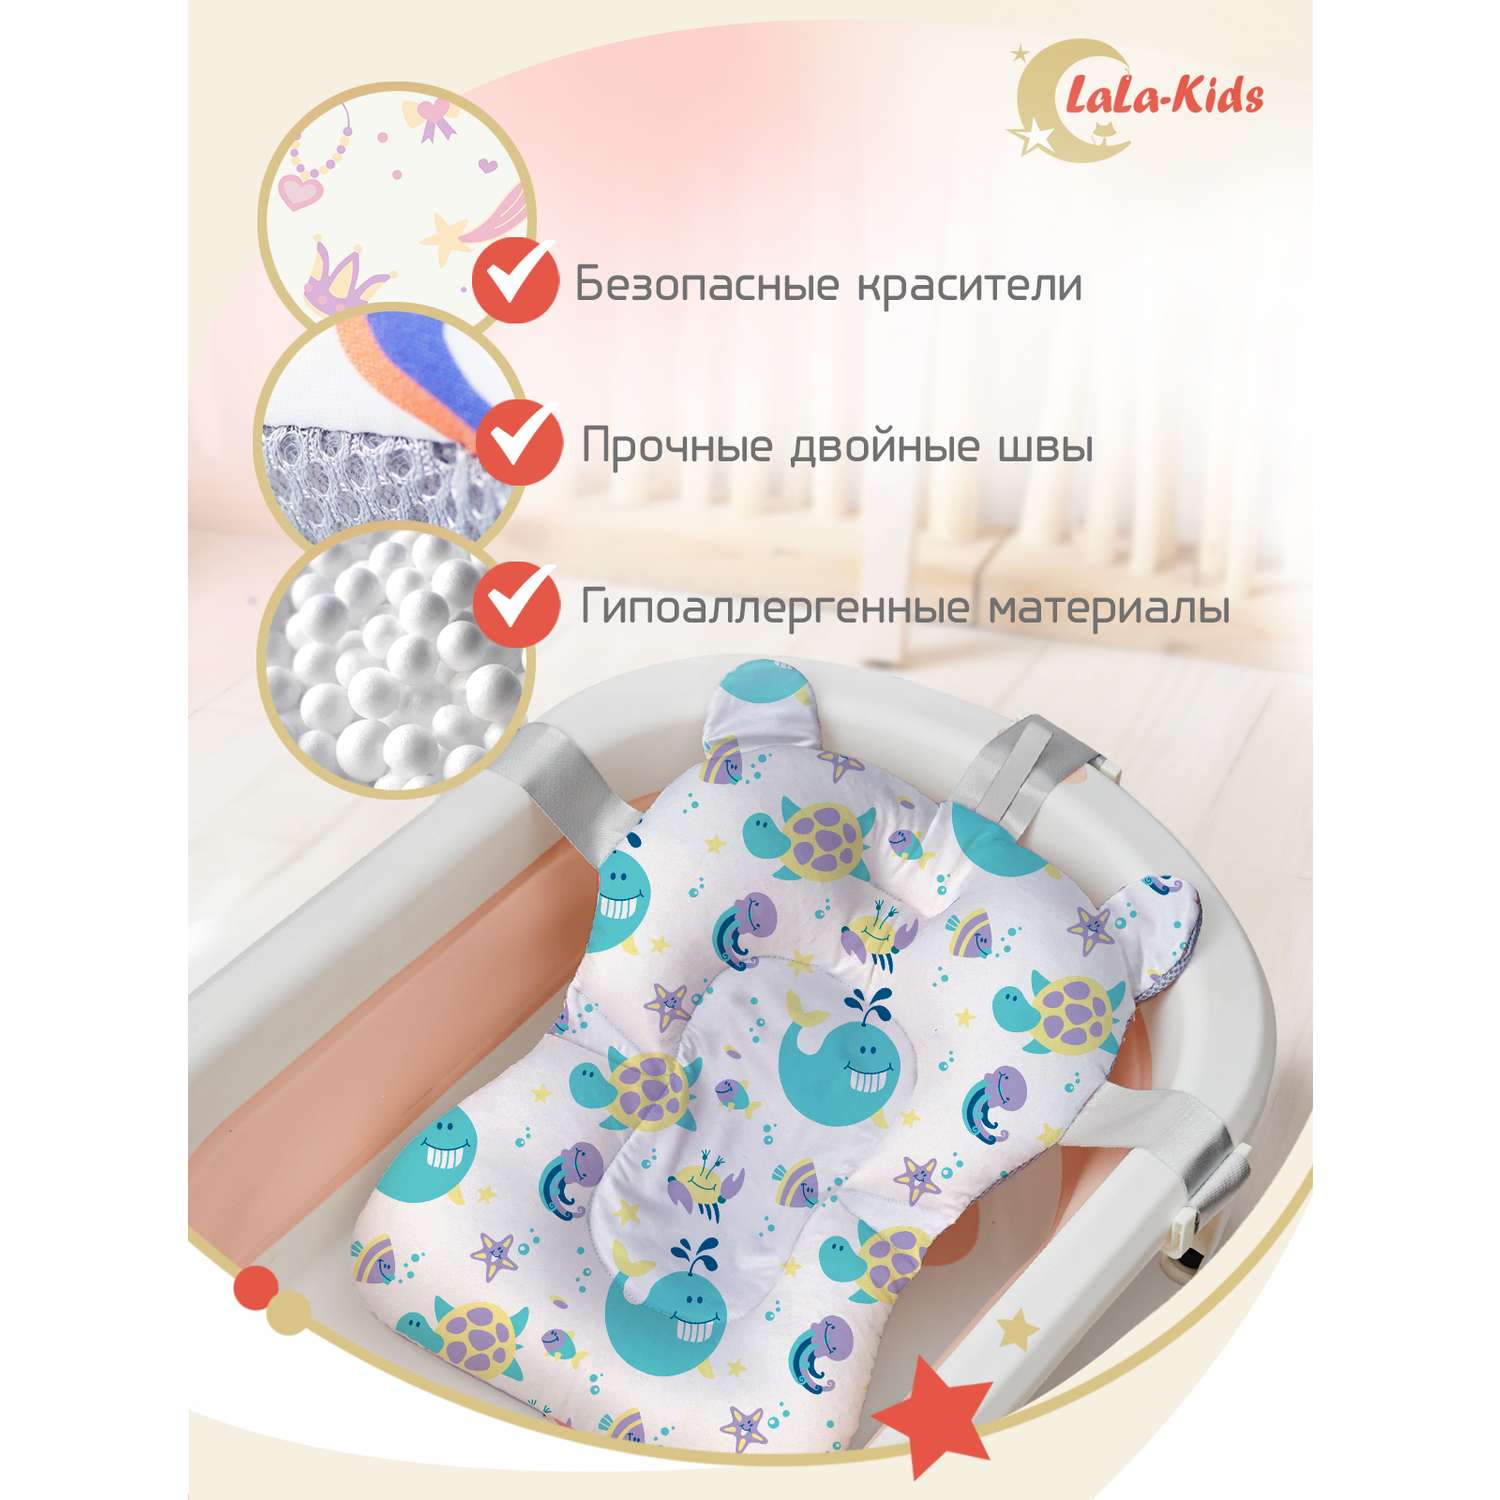 Детская ванночка с термометром LaLa-Kids складная для купания новорожденных с термометром и матрасиком в комплекте - фото 14